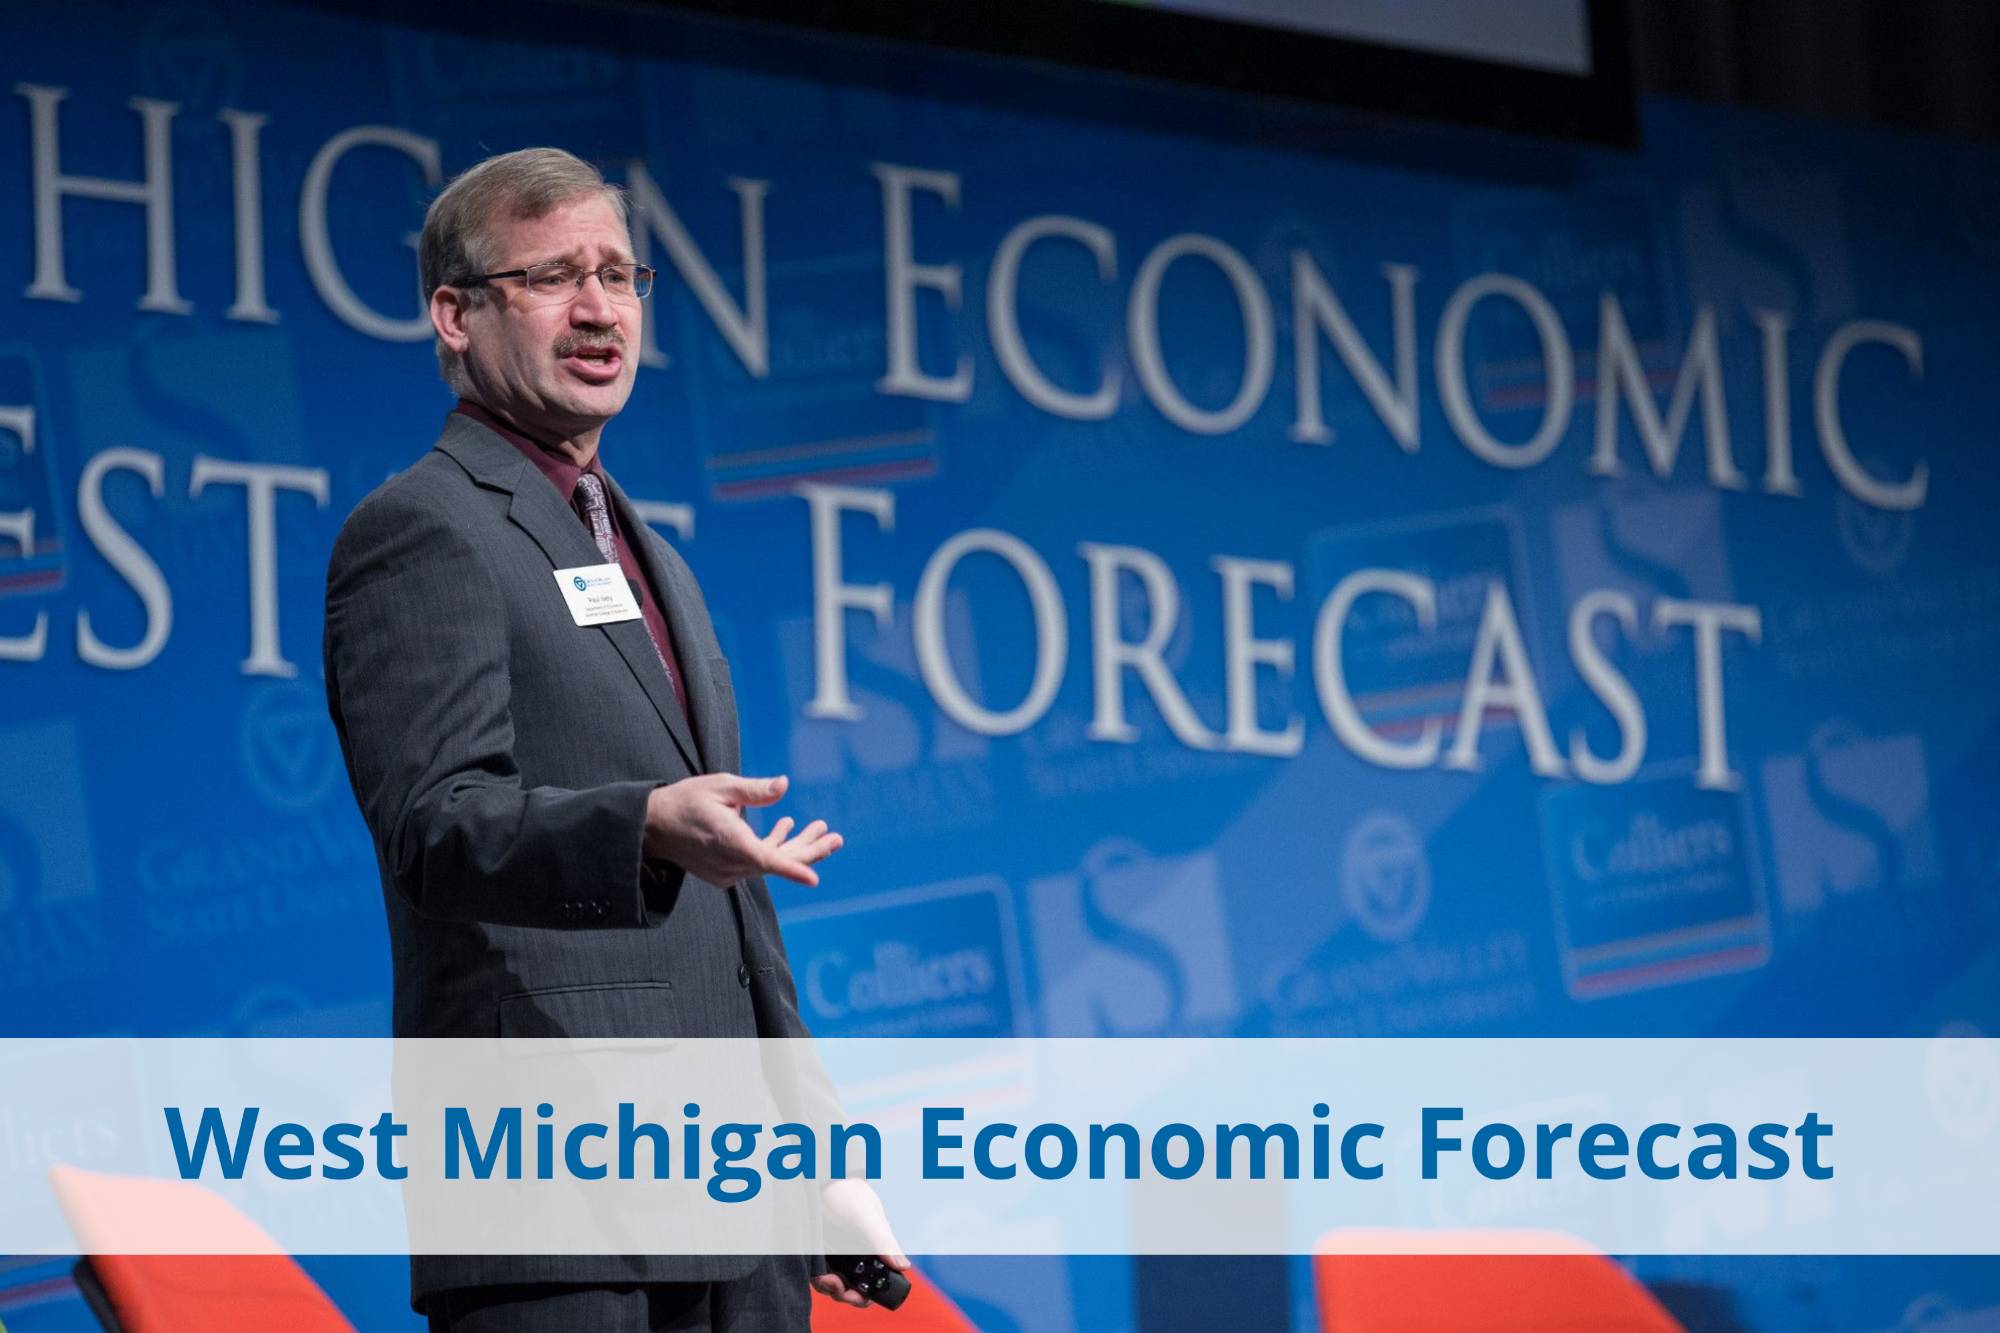 West Michigan Economic Forecast